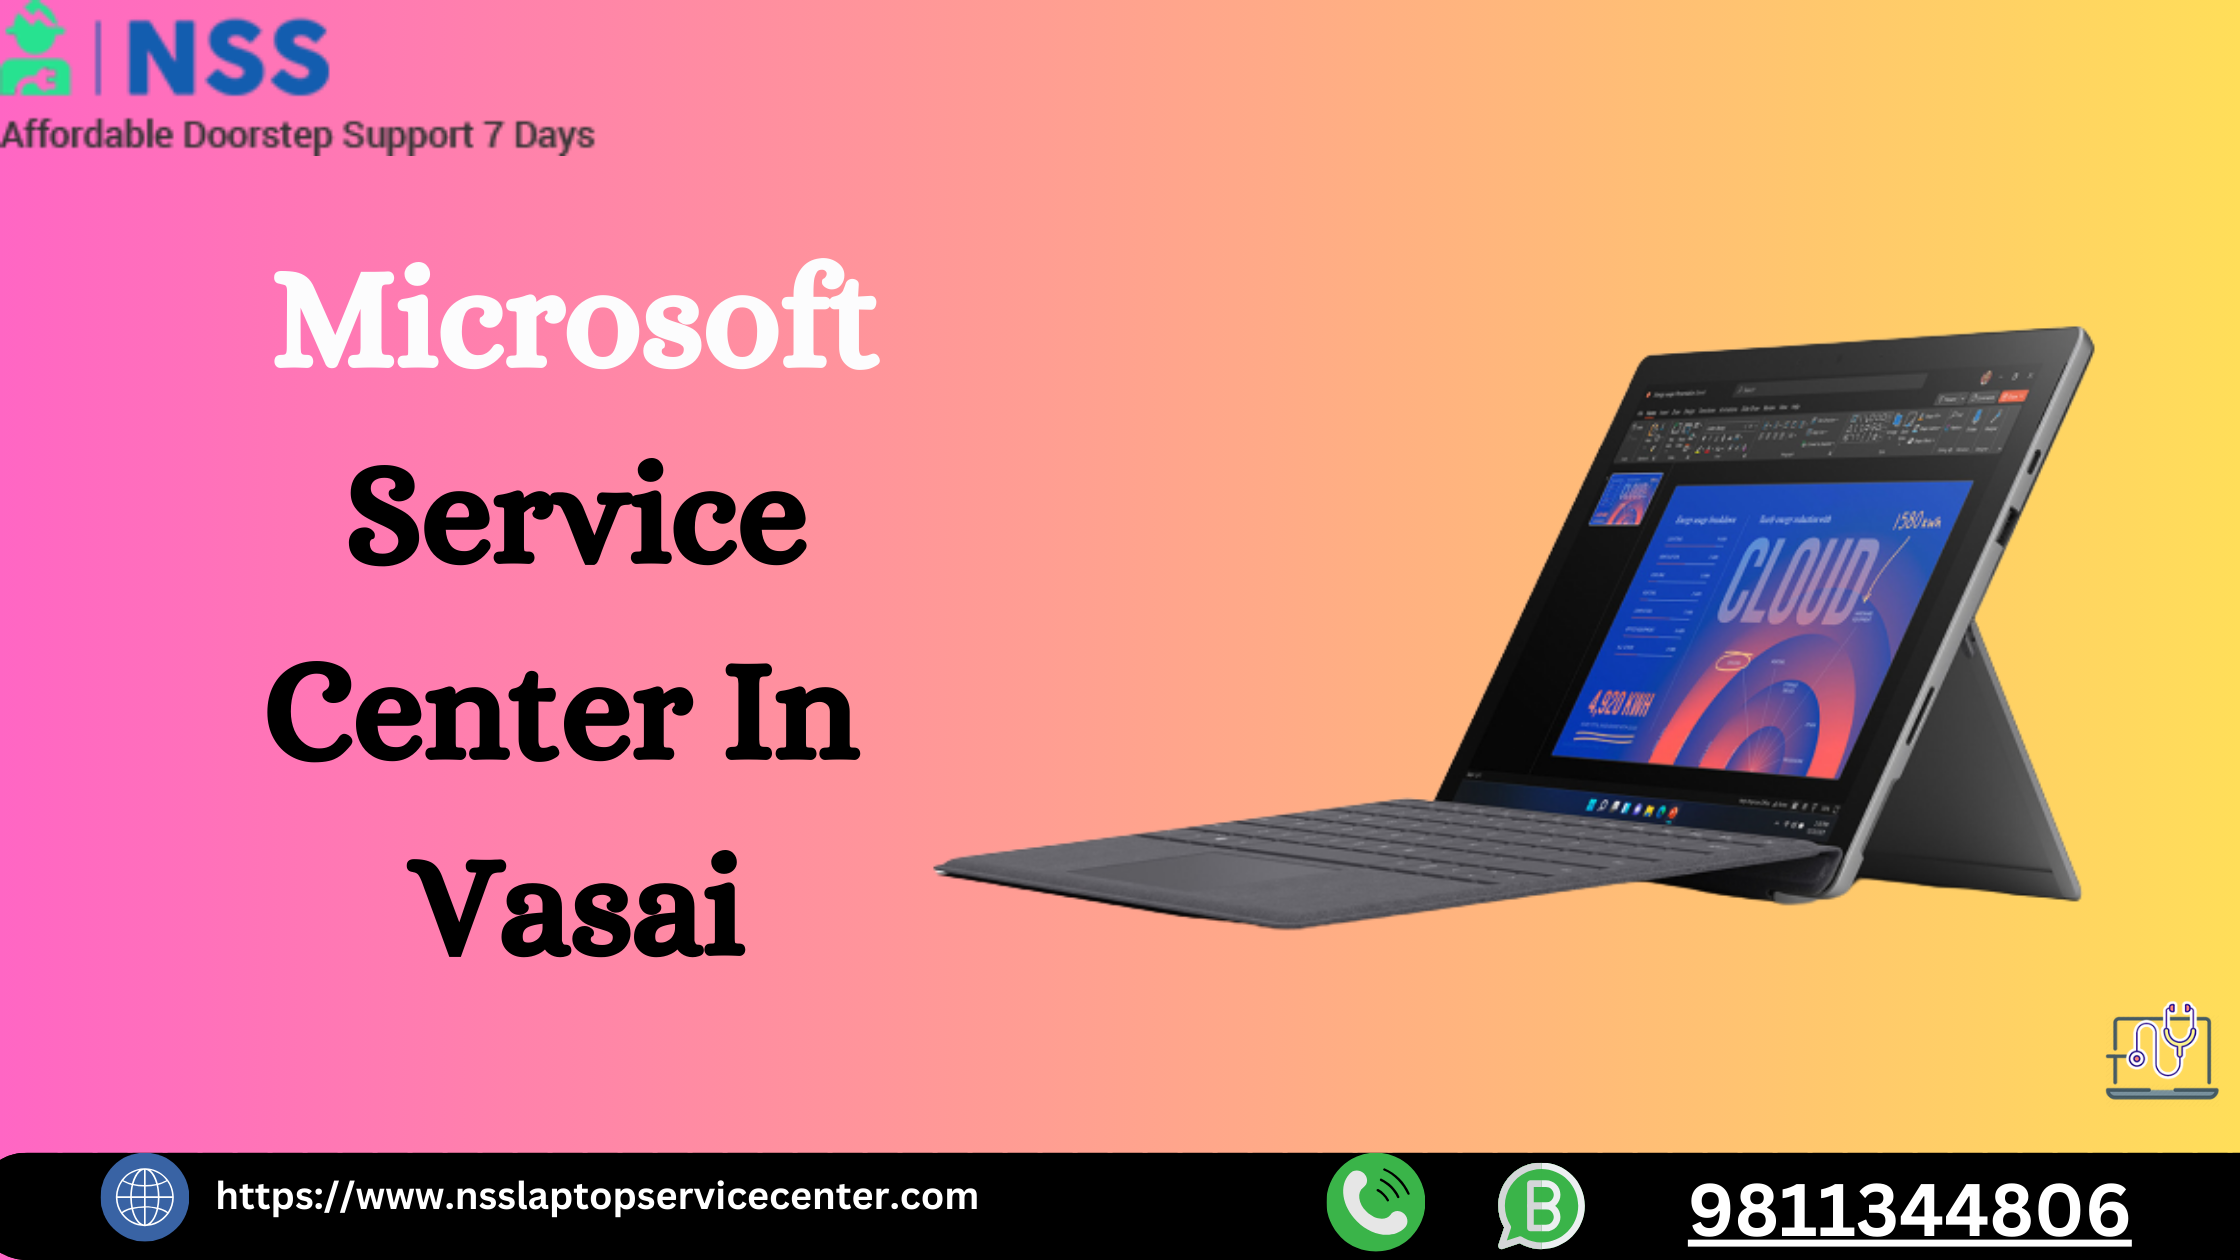 Microsoft Service Center in Vasai Near Mumbai